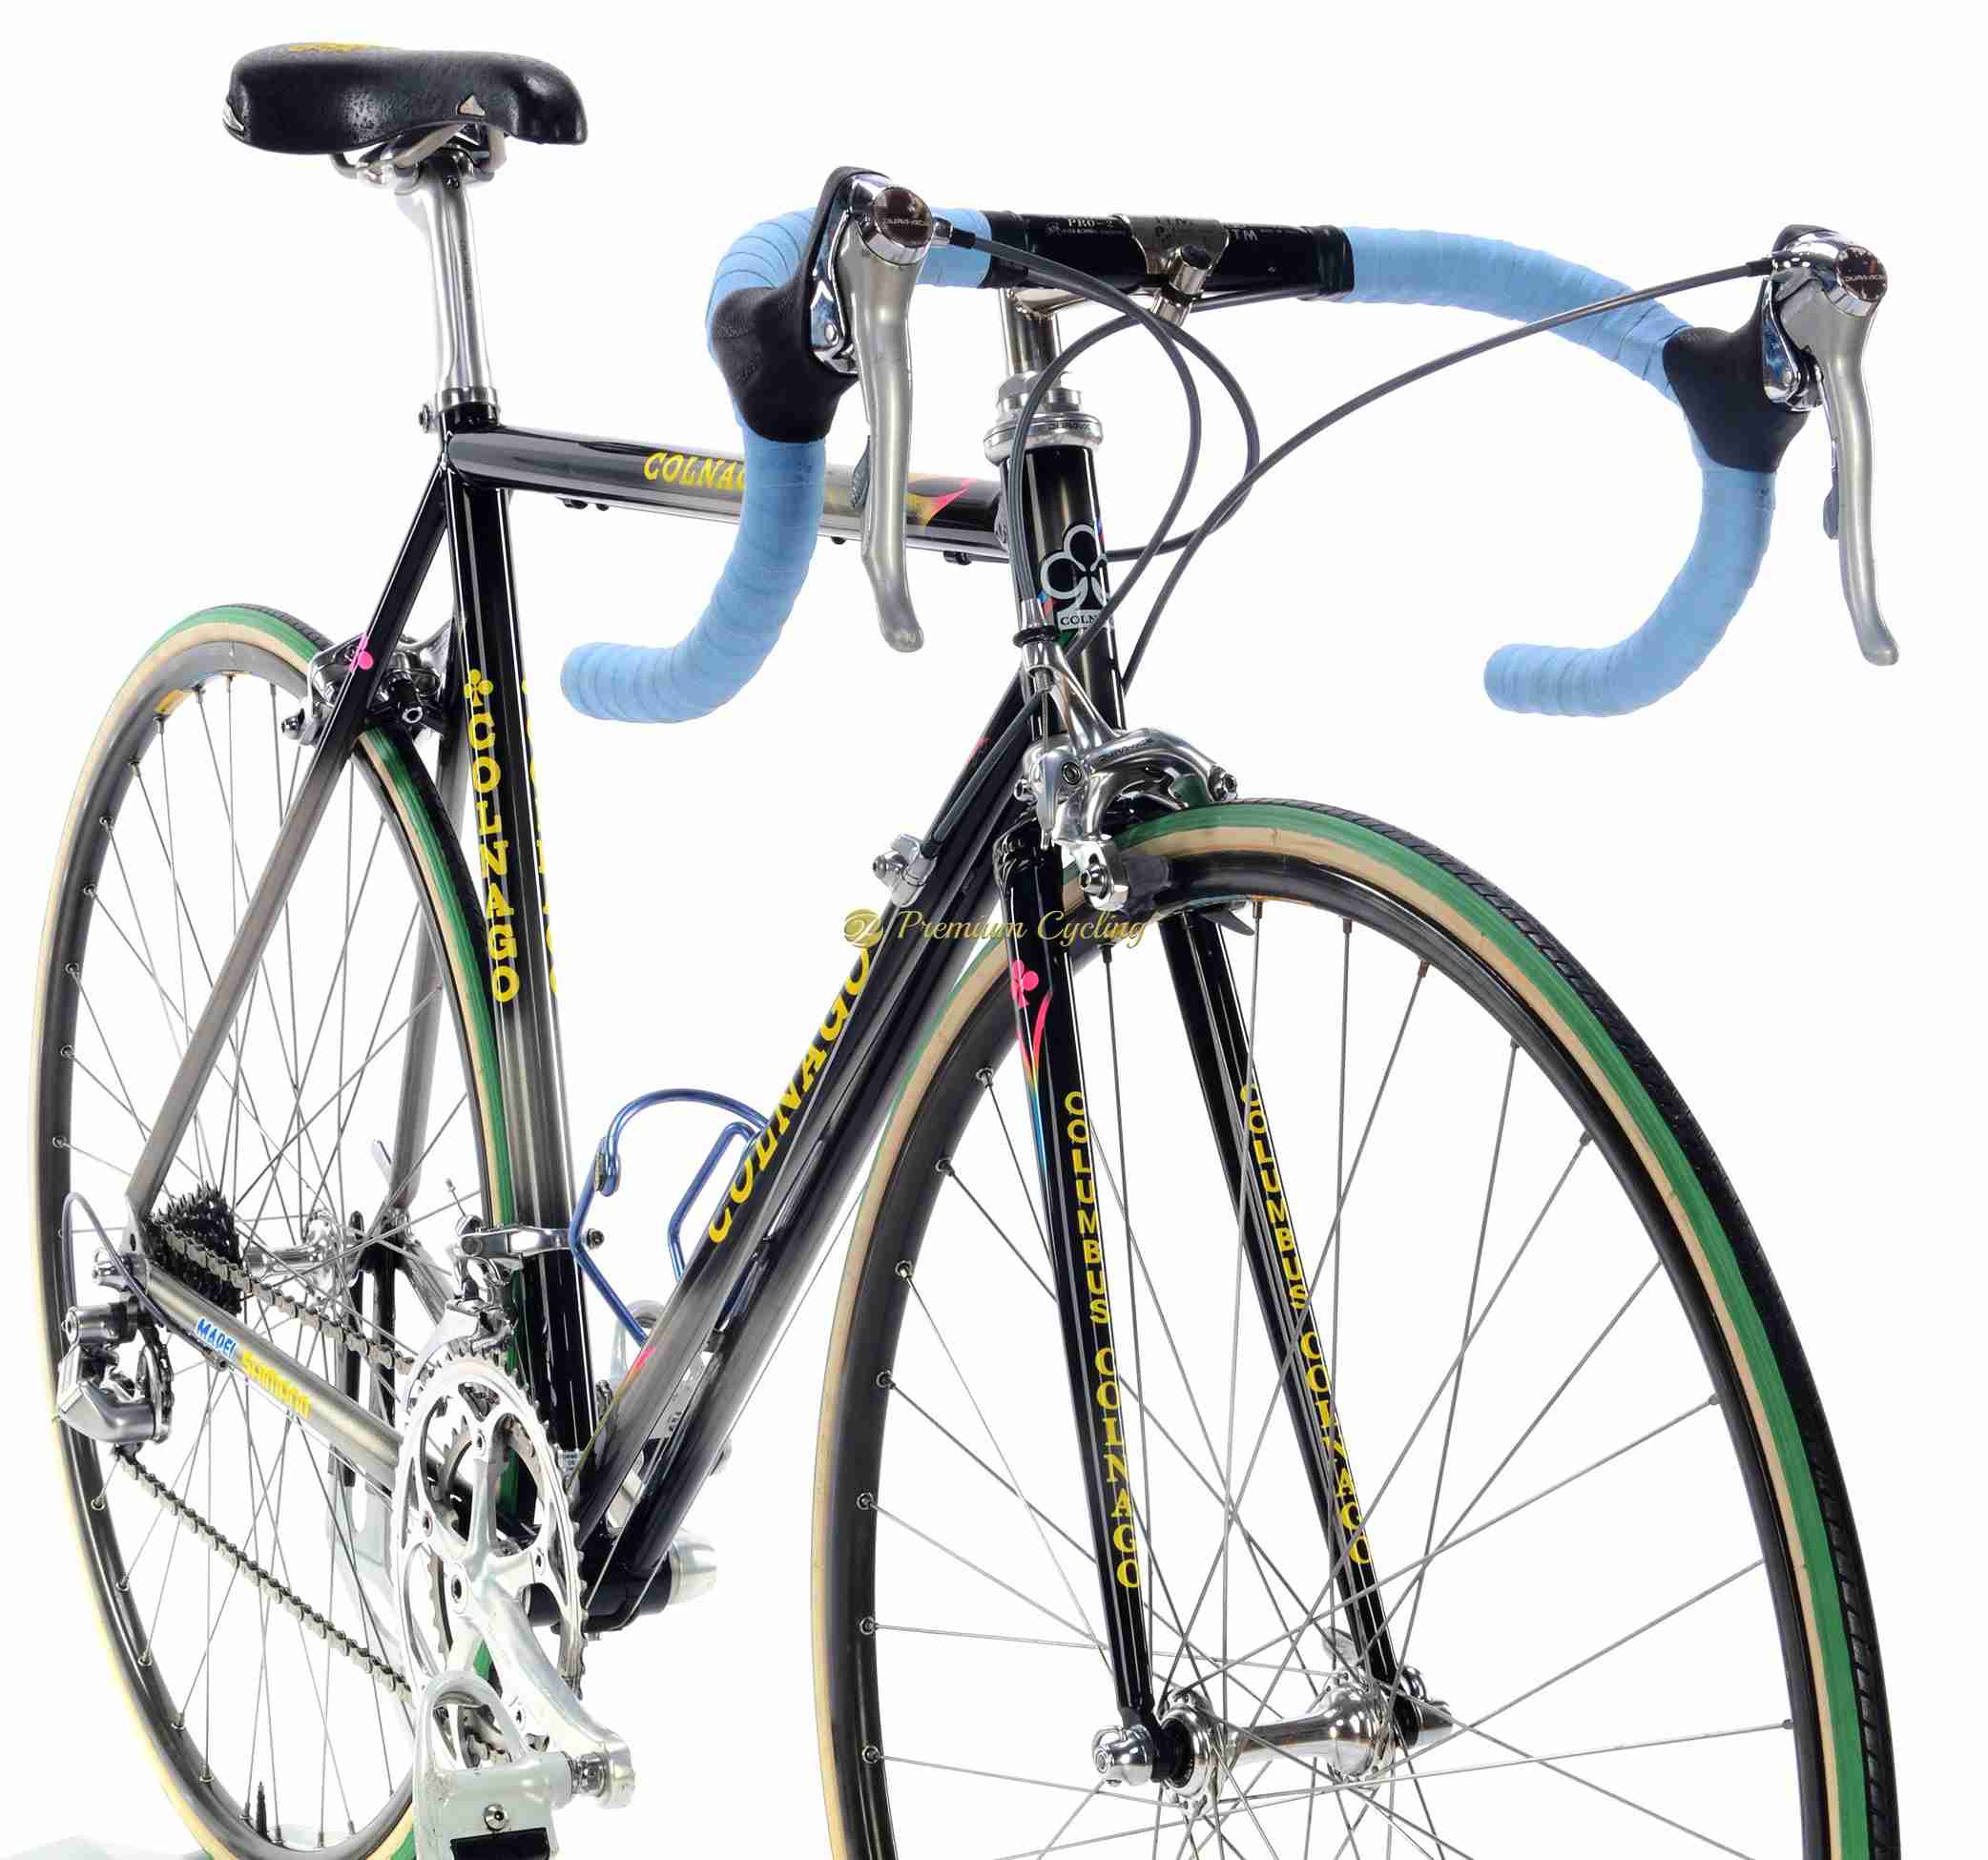 1995 COLNAGO Bititan Titanio Mapei T.Rominger replica, vintage titanium bike by Premium Cycling